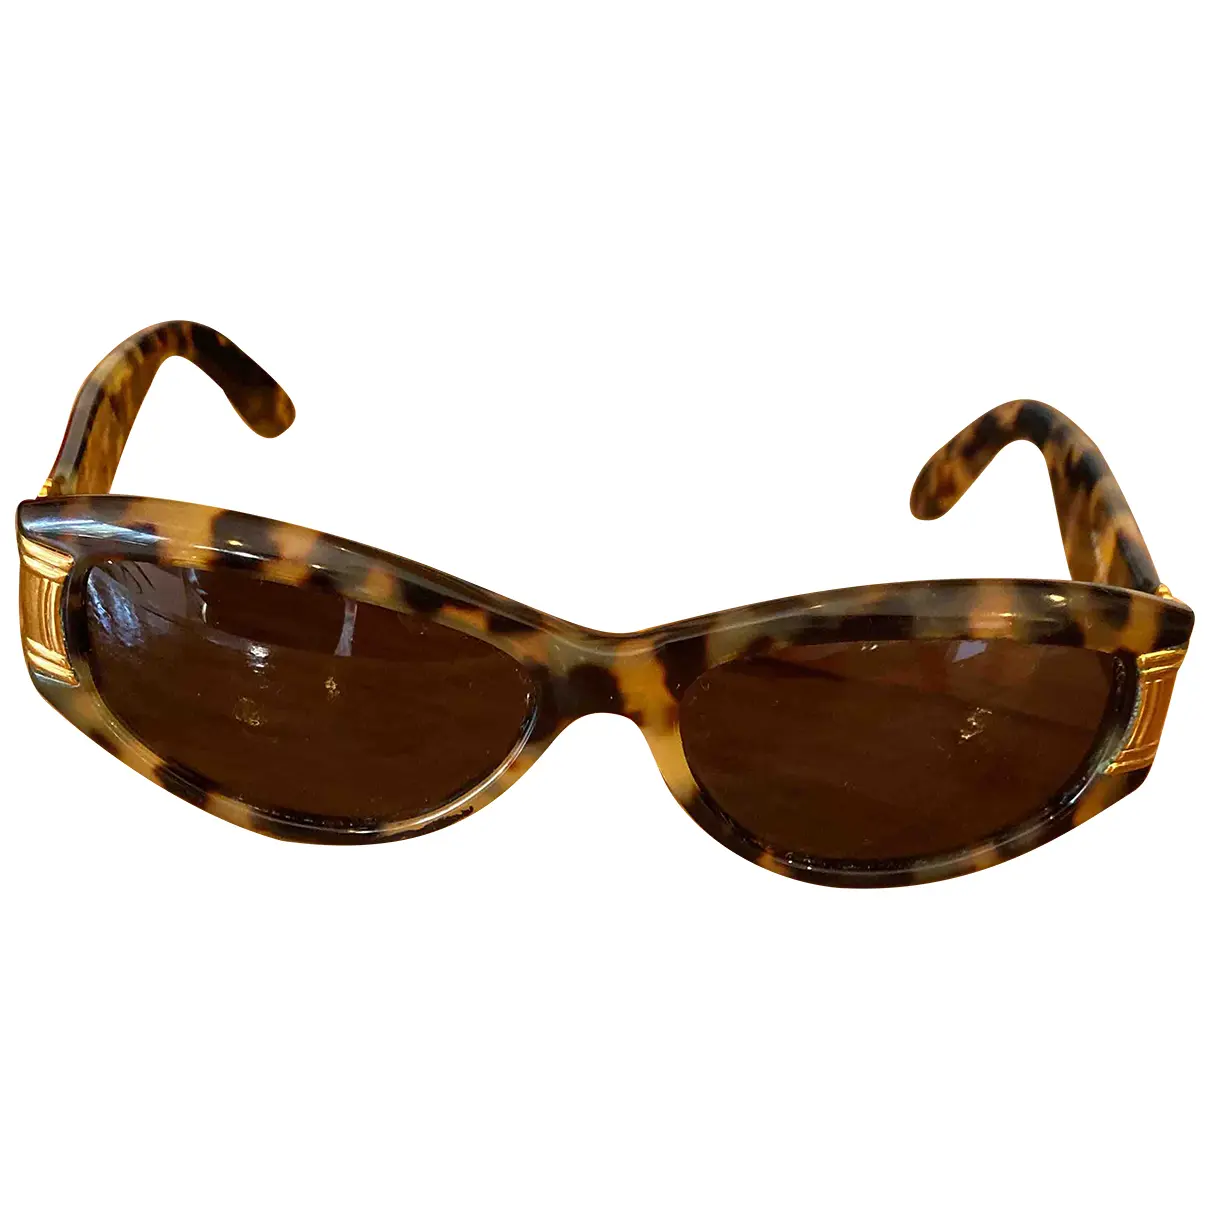 Sunglasses Diane Von Furstenberg